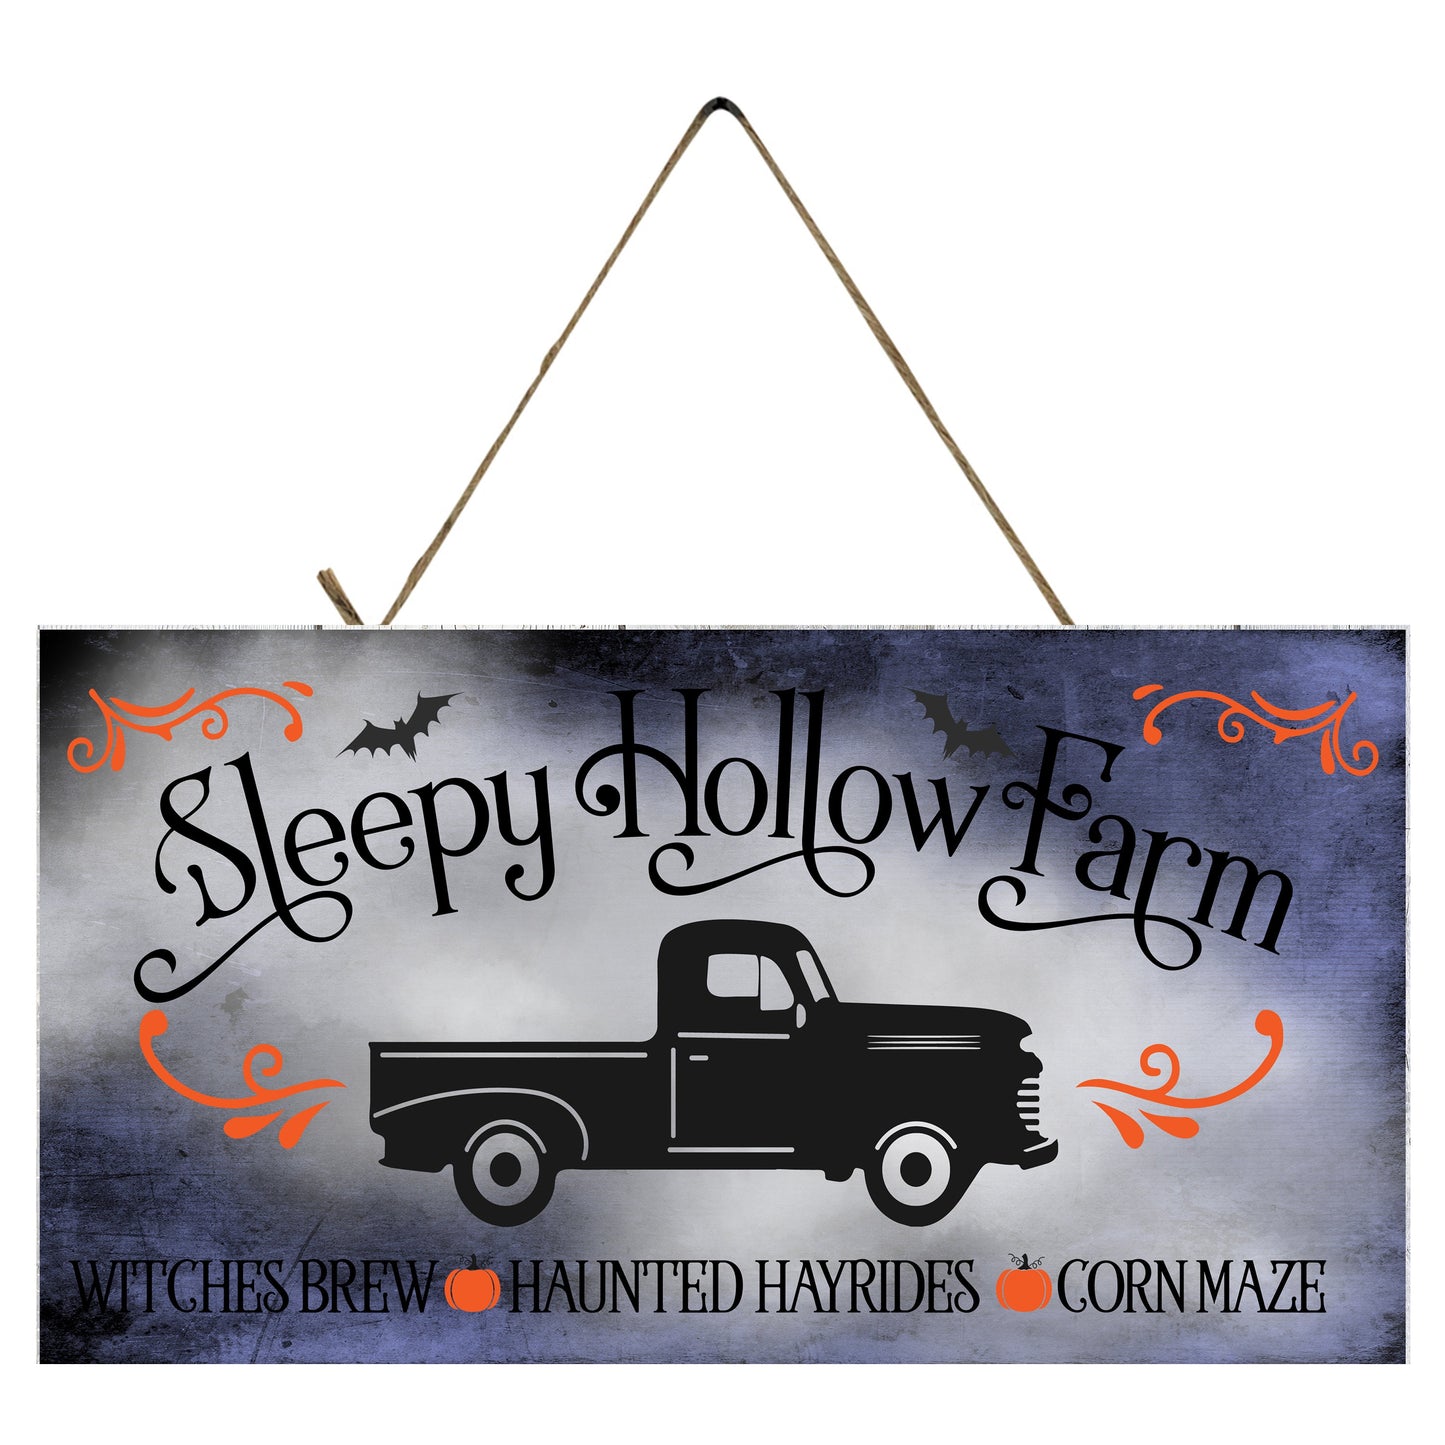 Letrero de madera hecho a mano impreso de Halloween de Sleepy Hollow Farm